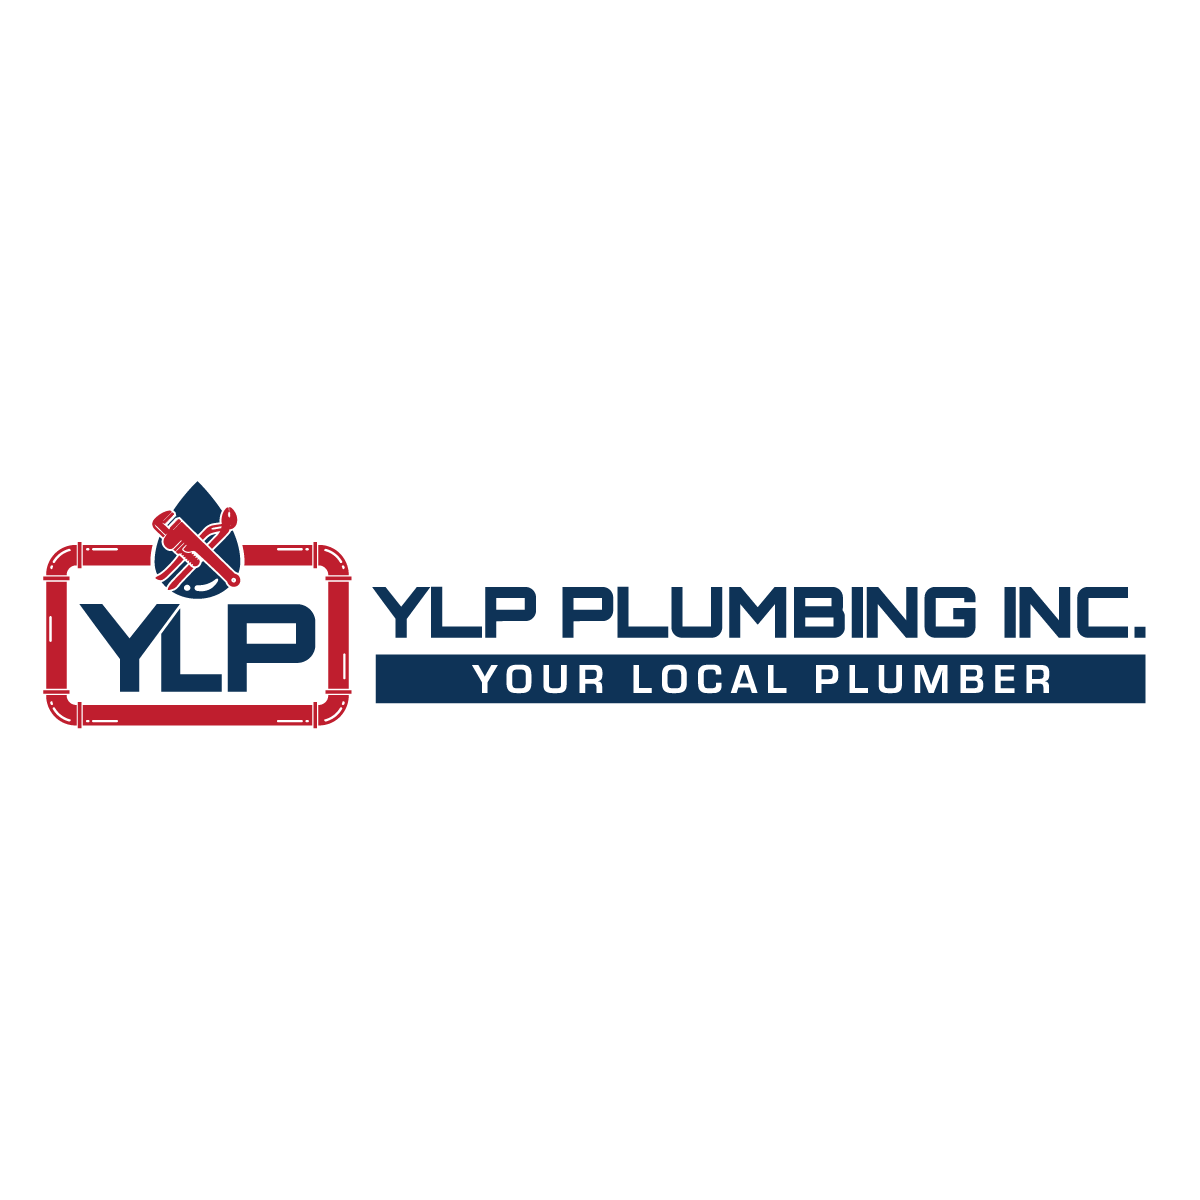 YLP Plumbing